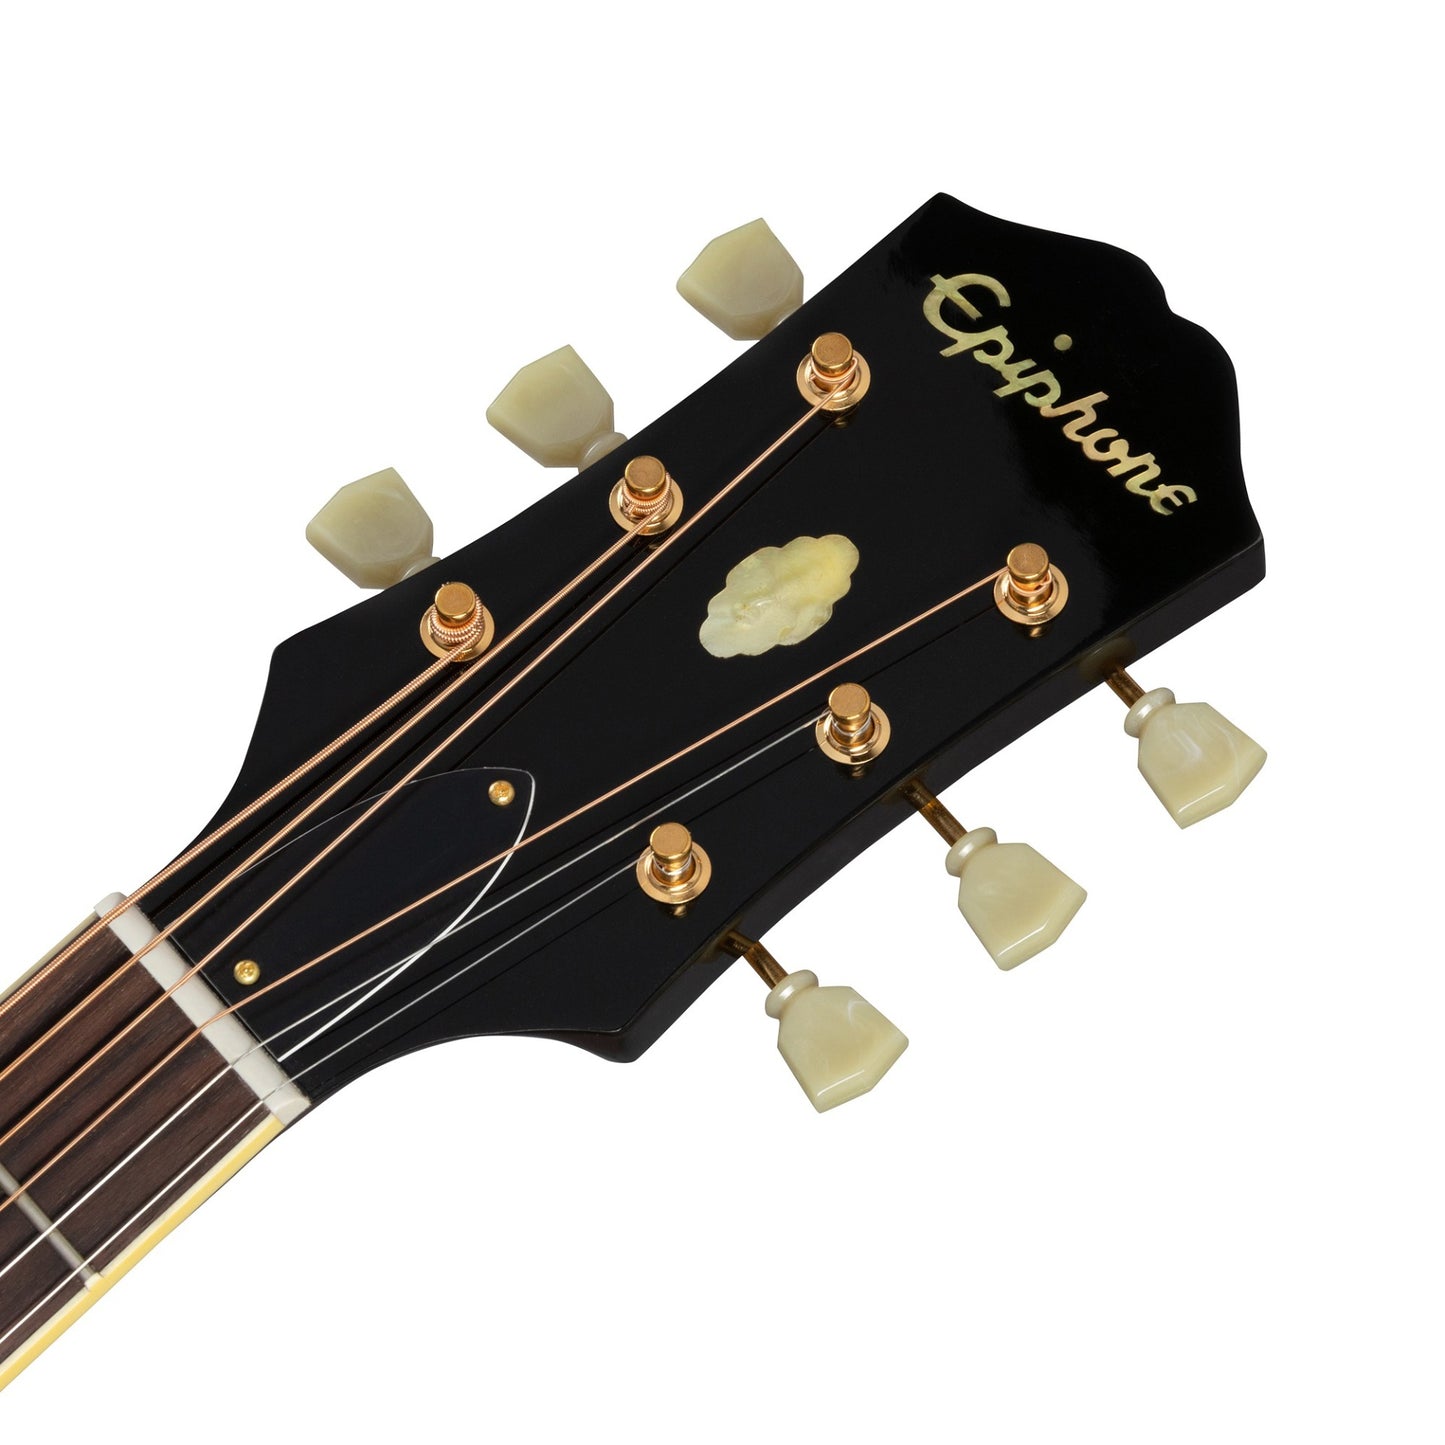 Epiphone Chris Stapleton Signature Acoustic Guitar in Frontier Sunburst